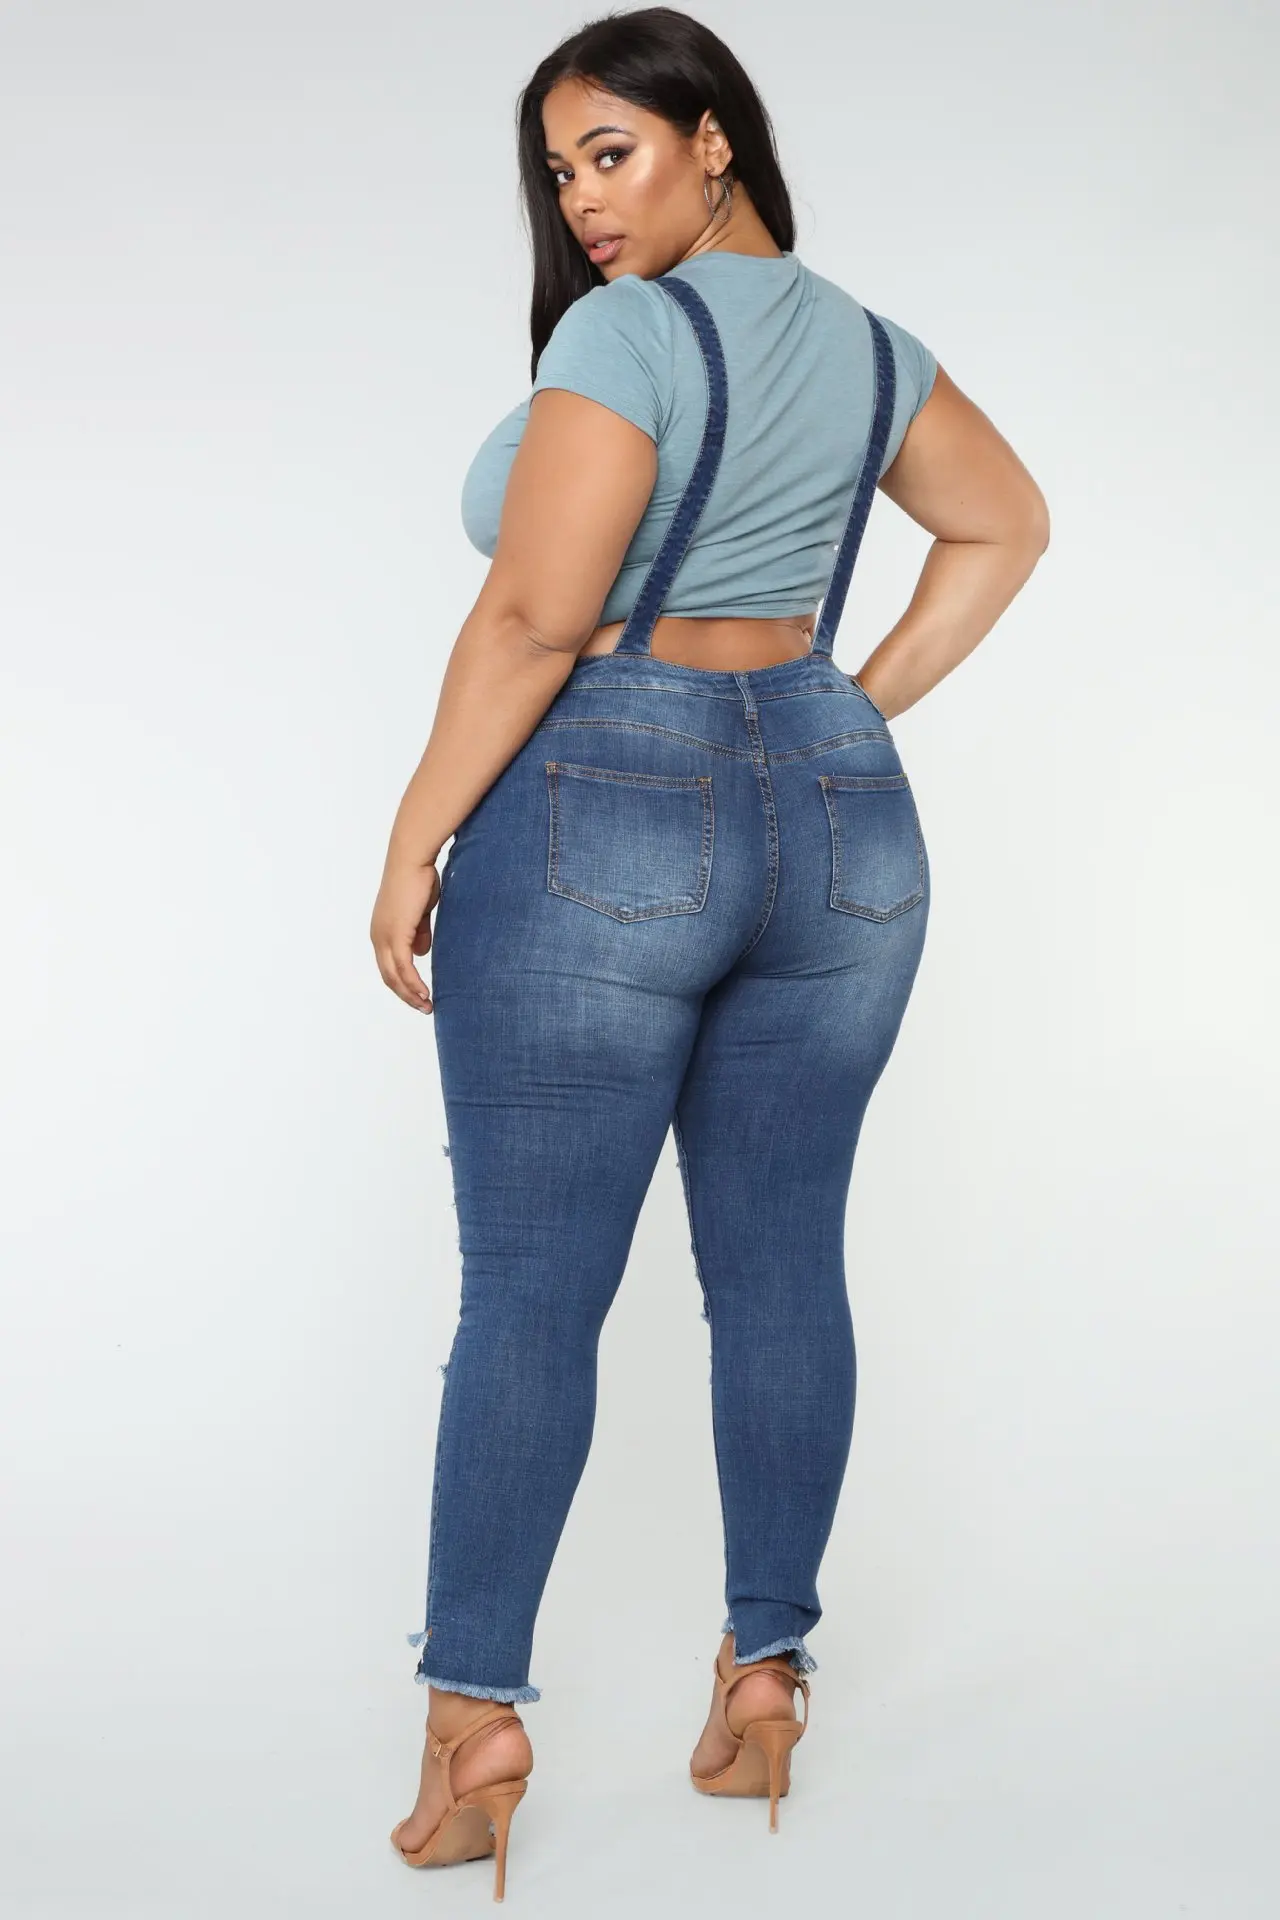 QMGOOD, женские комбинезоны размера плюс, крутой джинсовый комбинезон на лямках, рваные джинсы, синие обтягивающие Стрейчевые джинсы с высокой талией, женские 3XL